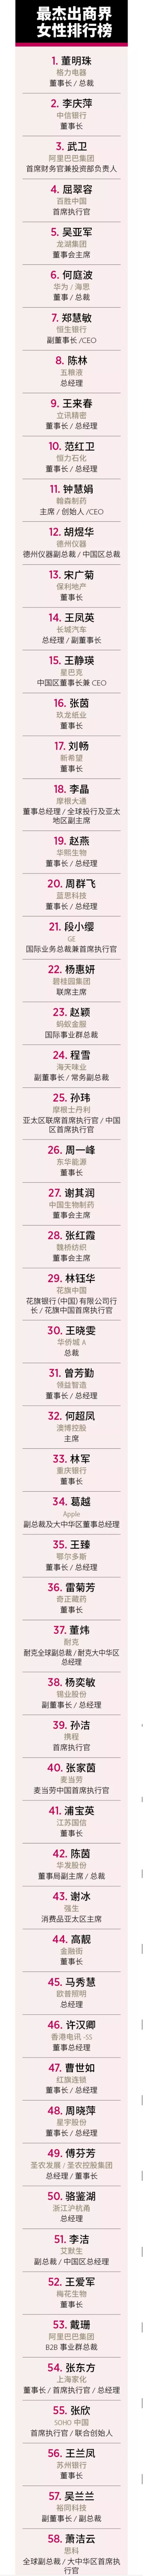 福布斯中国发布最杰出商界女性排行榜，董明珠问鼎榜首_人物_电商之家